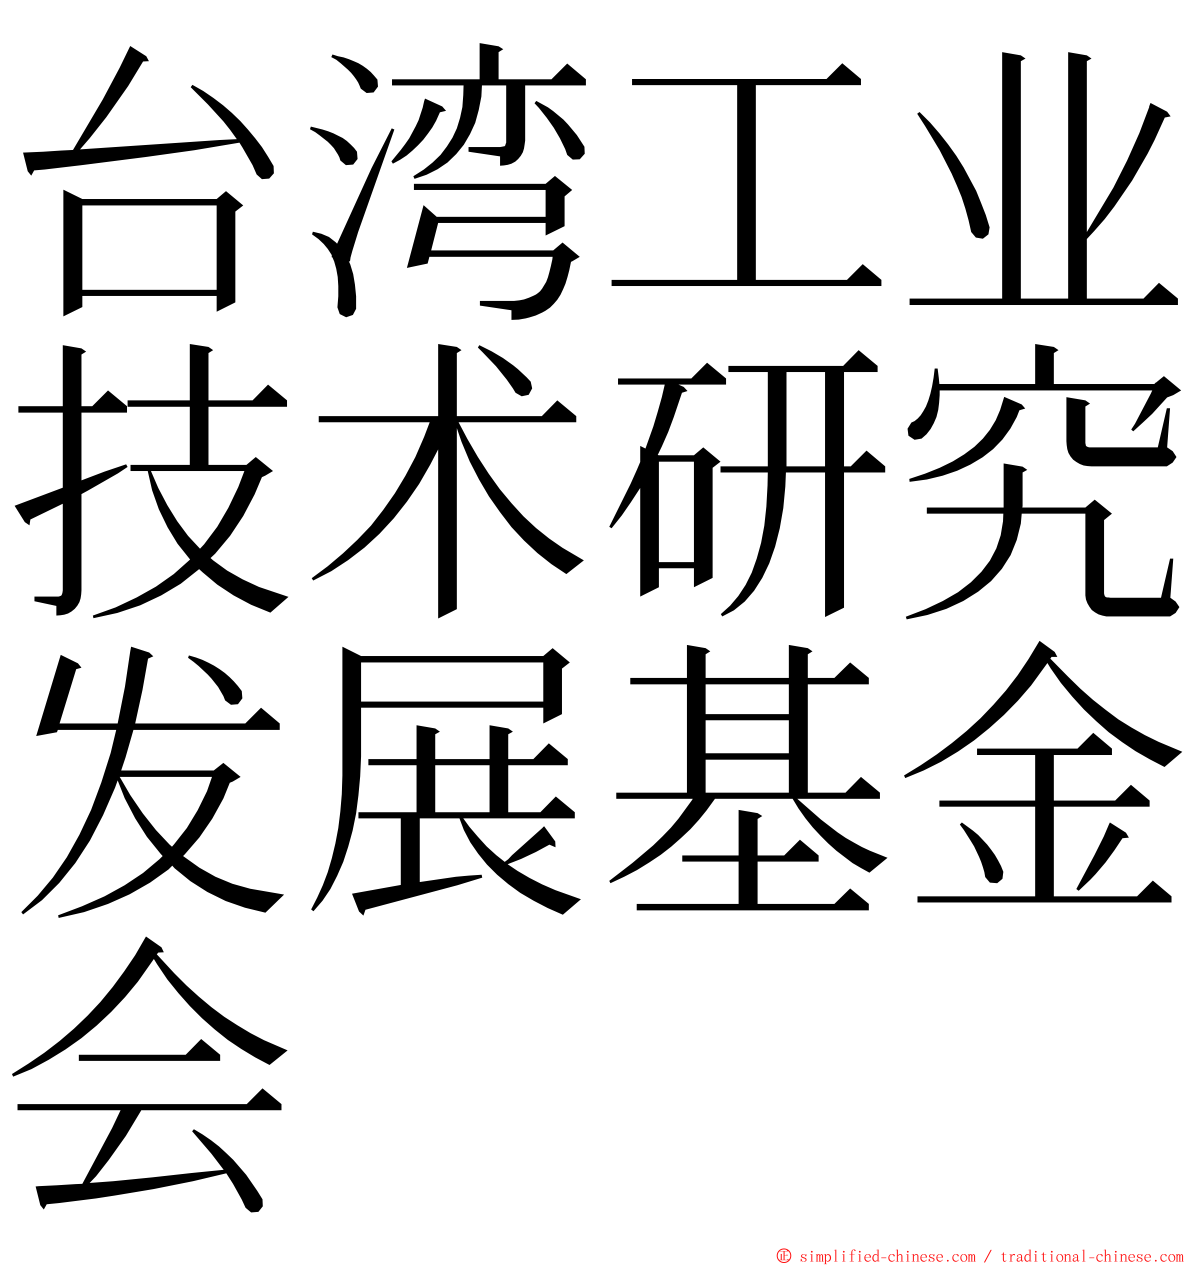 台湾工业技术研究发展基金会 ming font